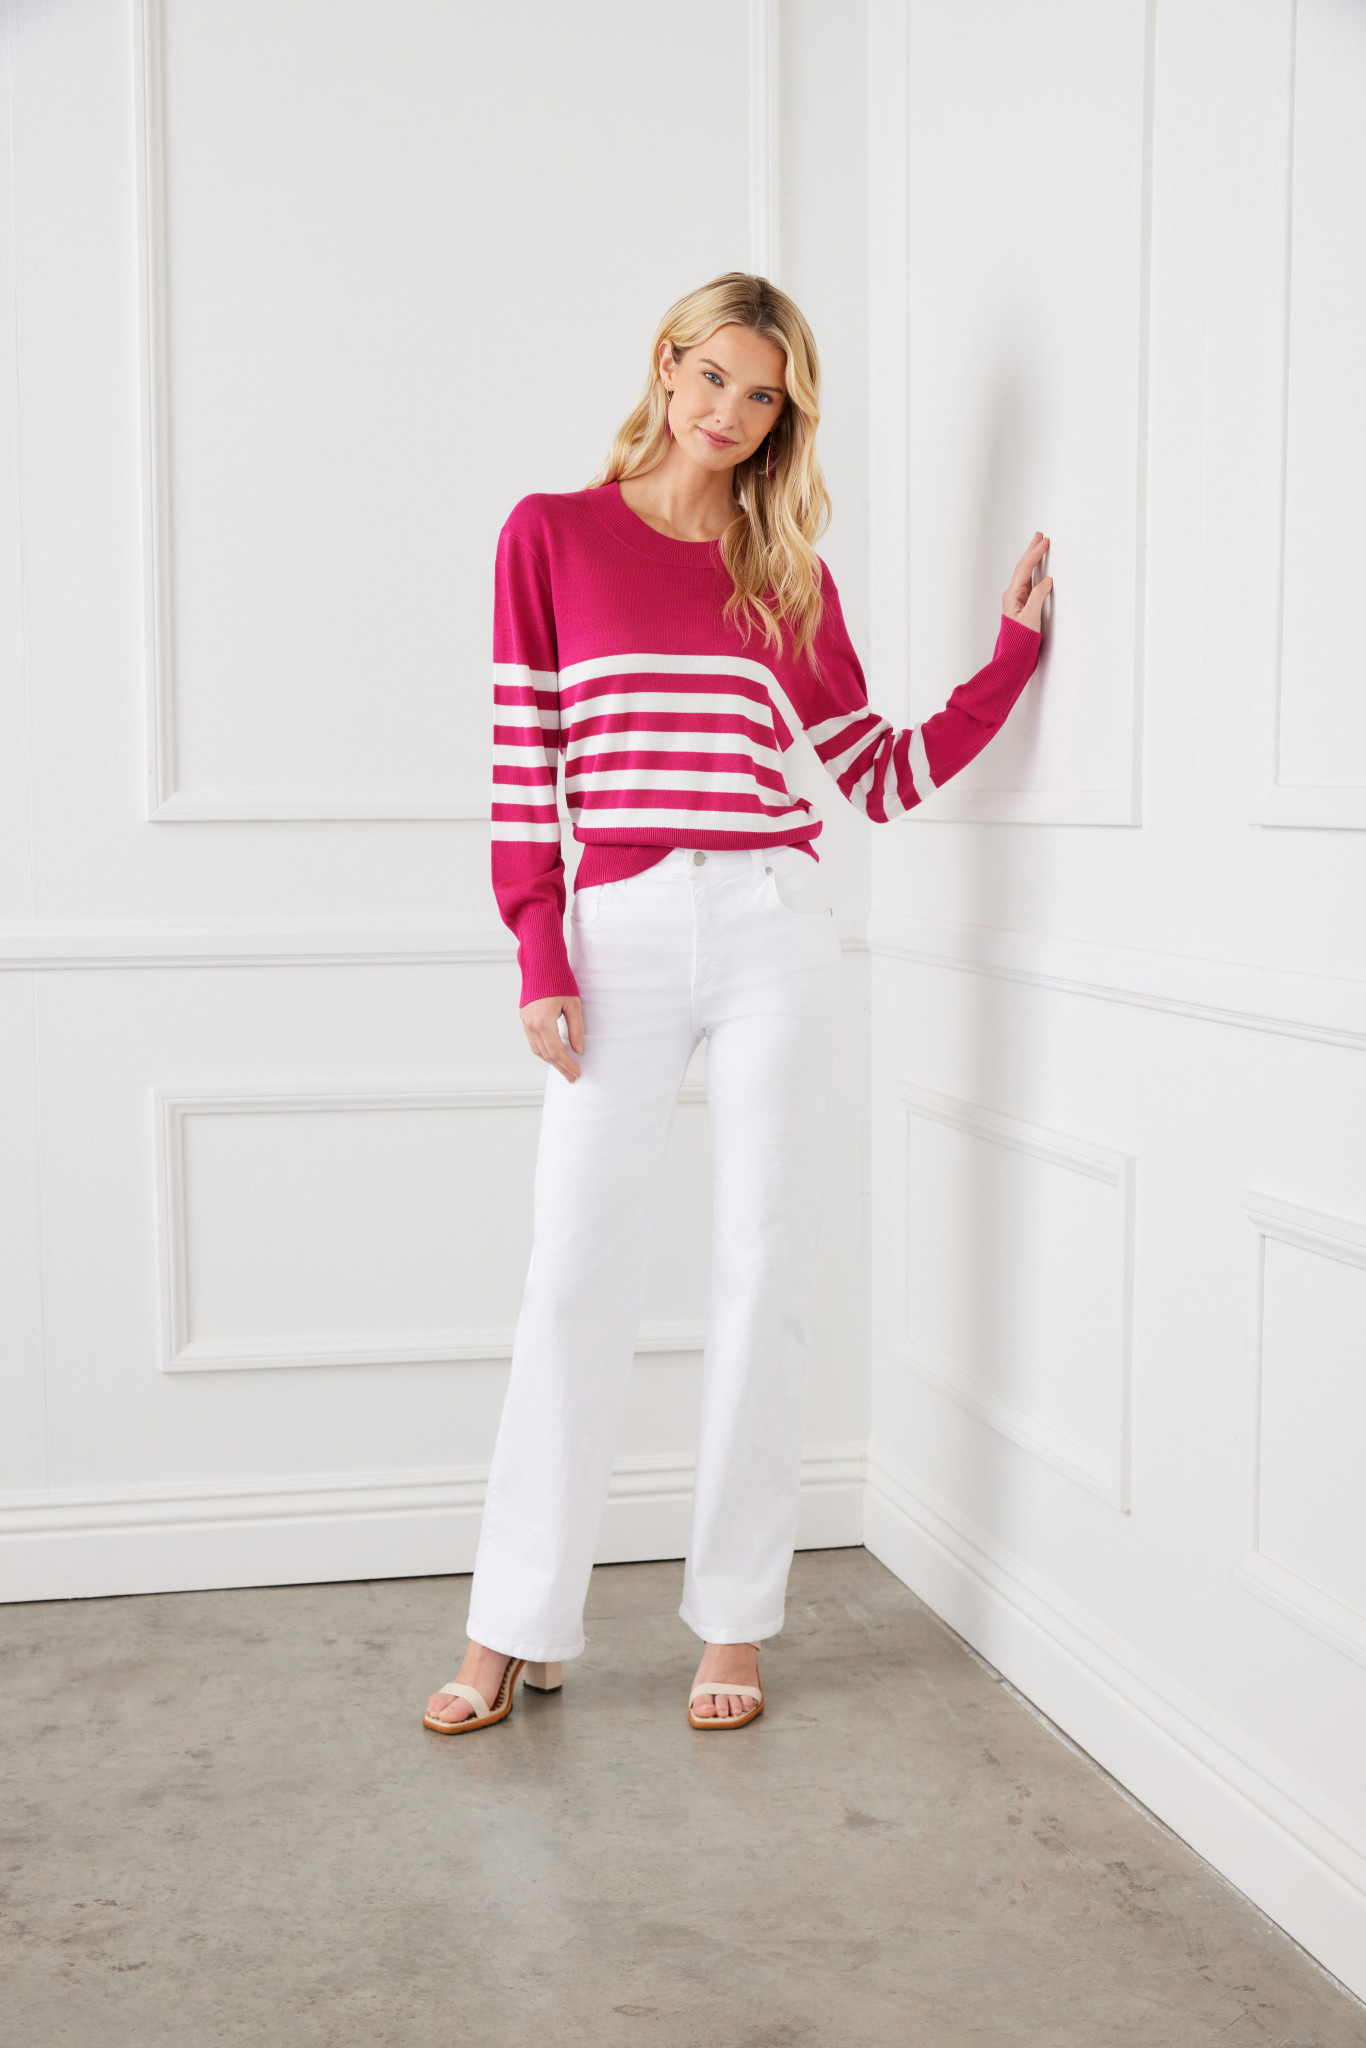 Karen Kane Pink W/Off White Stripe Sweater